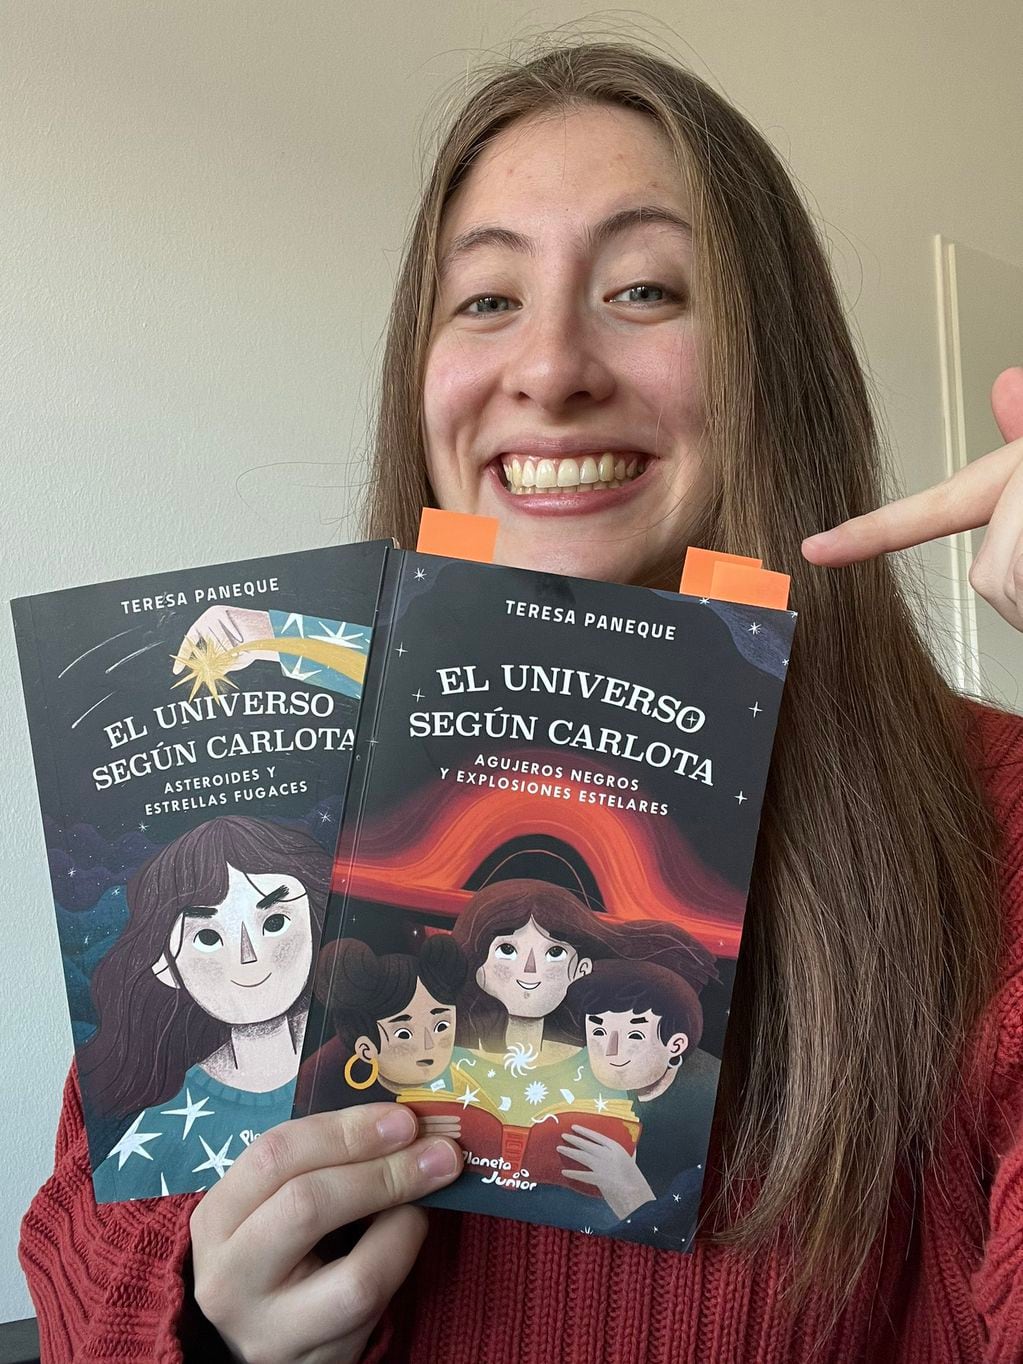 La escritora con sus libros de "El universo según Carlota". FOTO: Twitter de Teresa Paneque